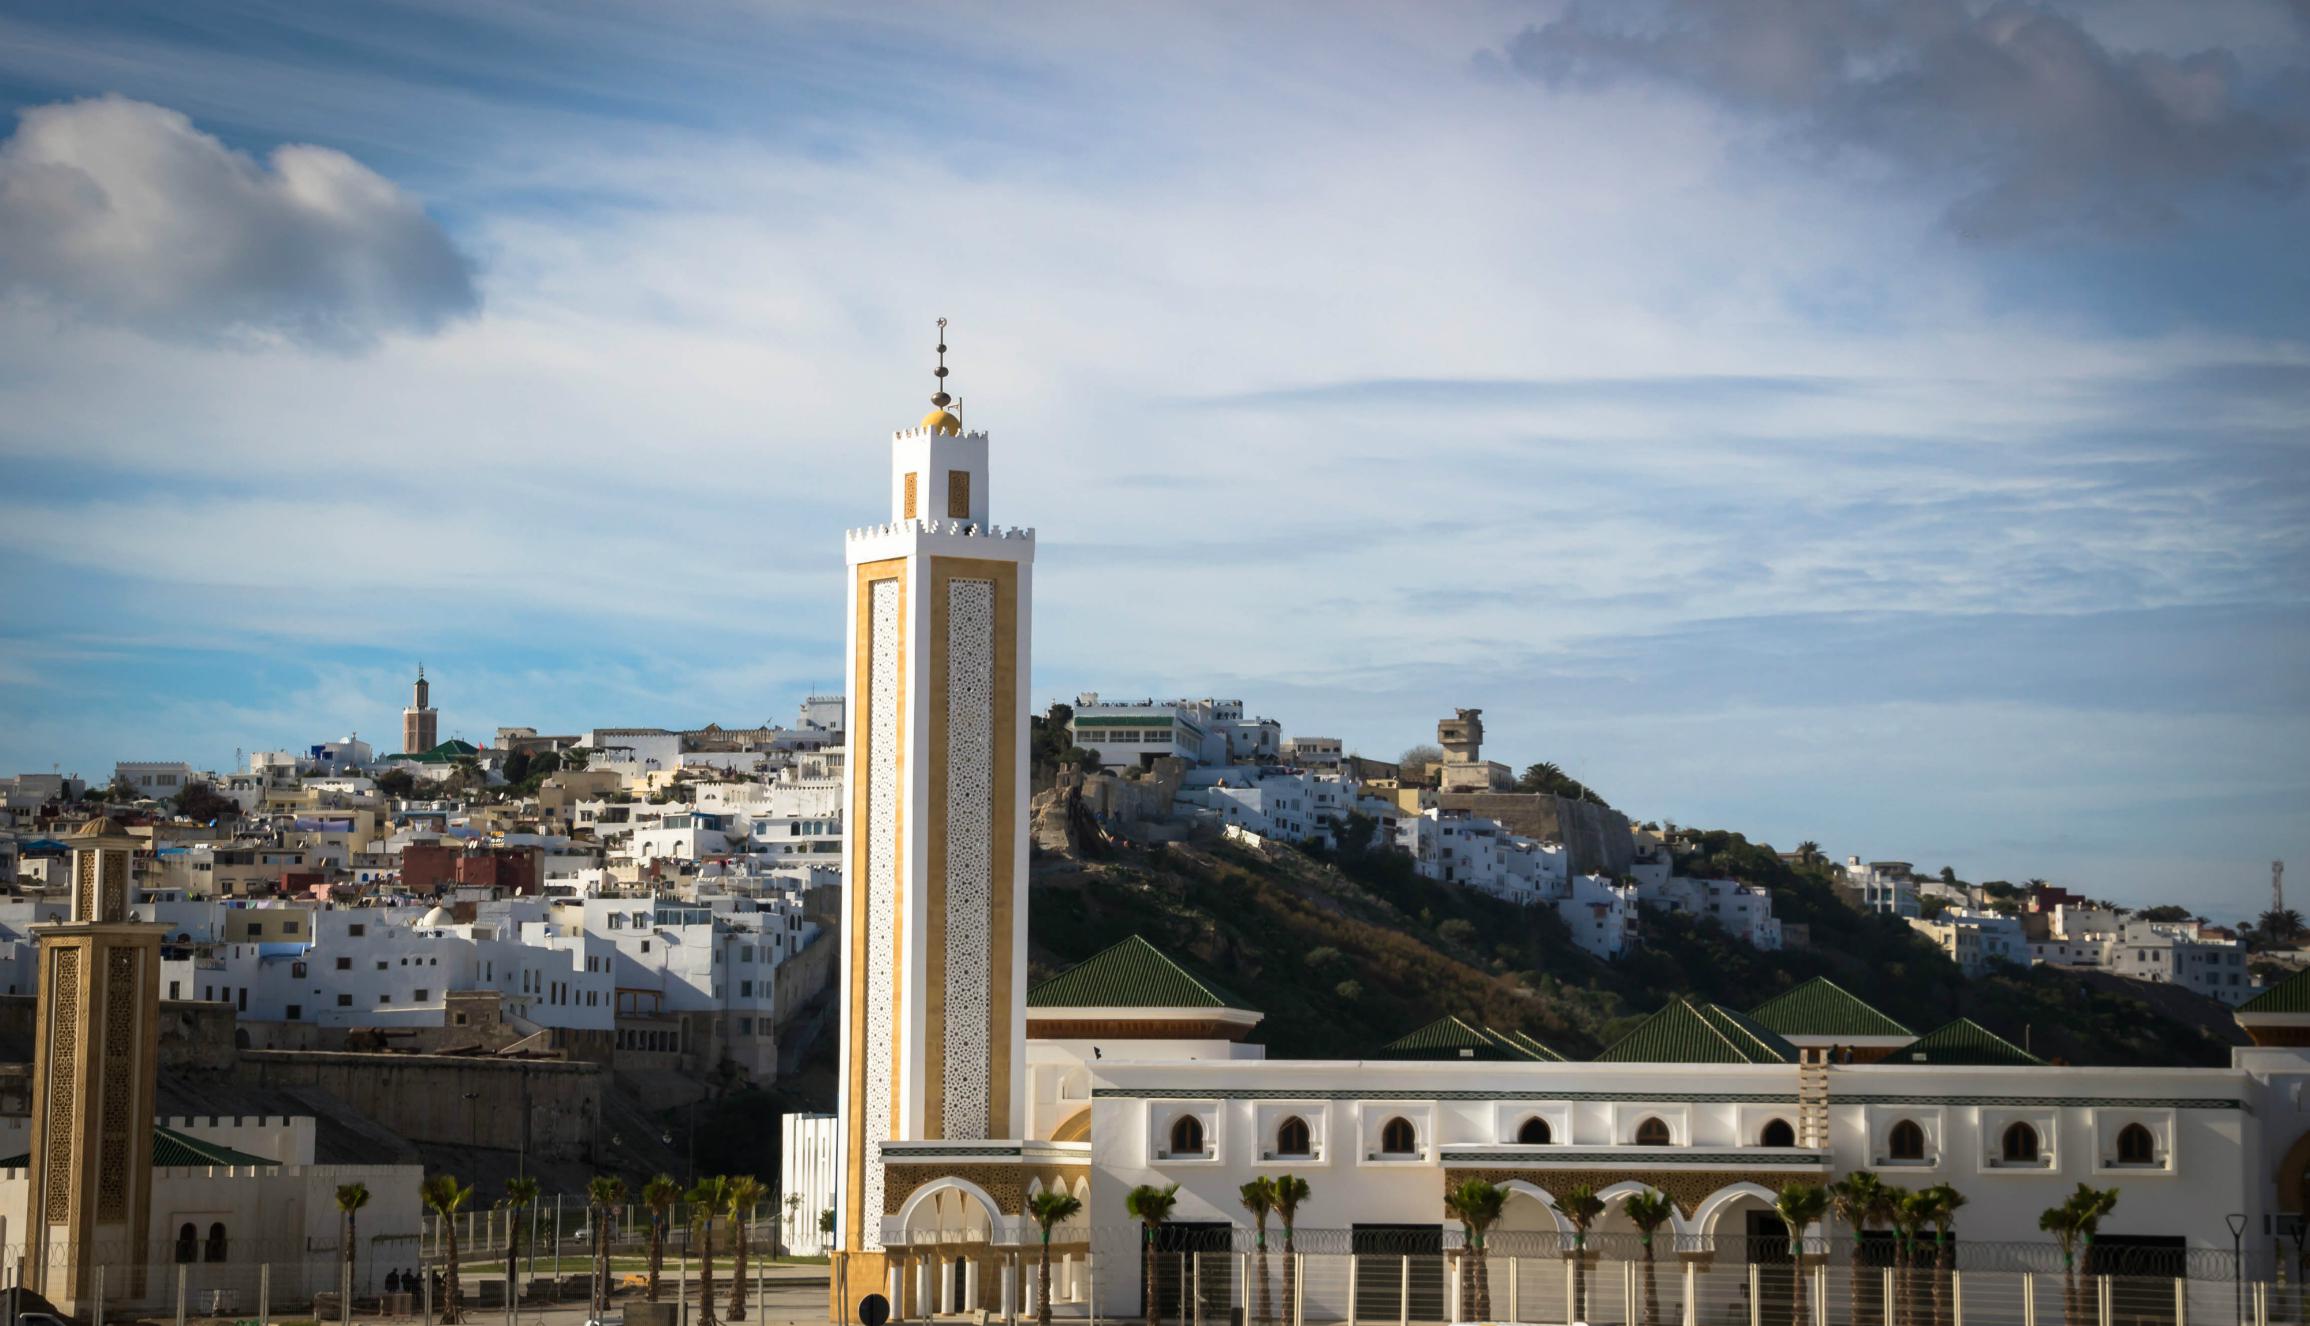 Panorámica de la medina o kasbah, como se conoce a la zona antigua y amurallada de esta localidad marroquí. (Foto: Shutterstock).